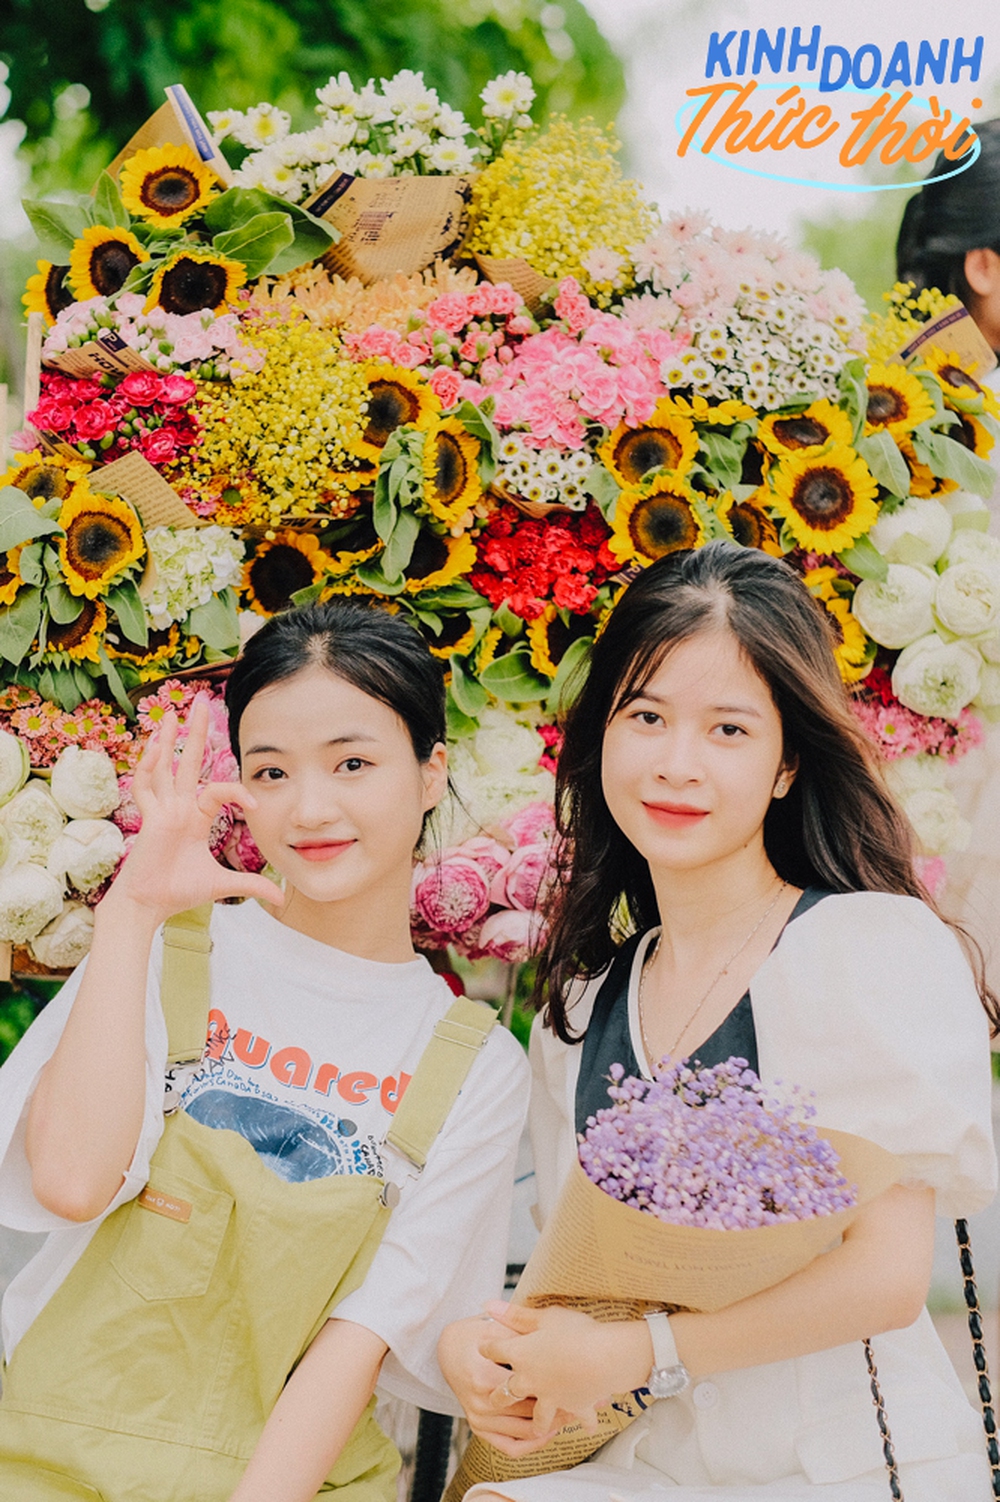 Gánh hoa đặc trưng của đường phố Hà Nội không ngờ lại mang tới cơ hội kiếm cả triệu mỗi ngày cho người dân thành phố khác - Ảnh 5.